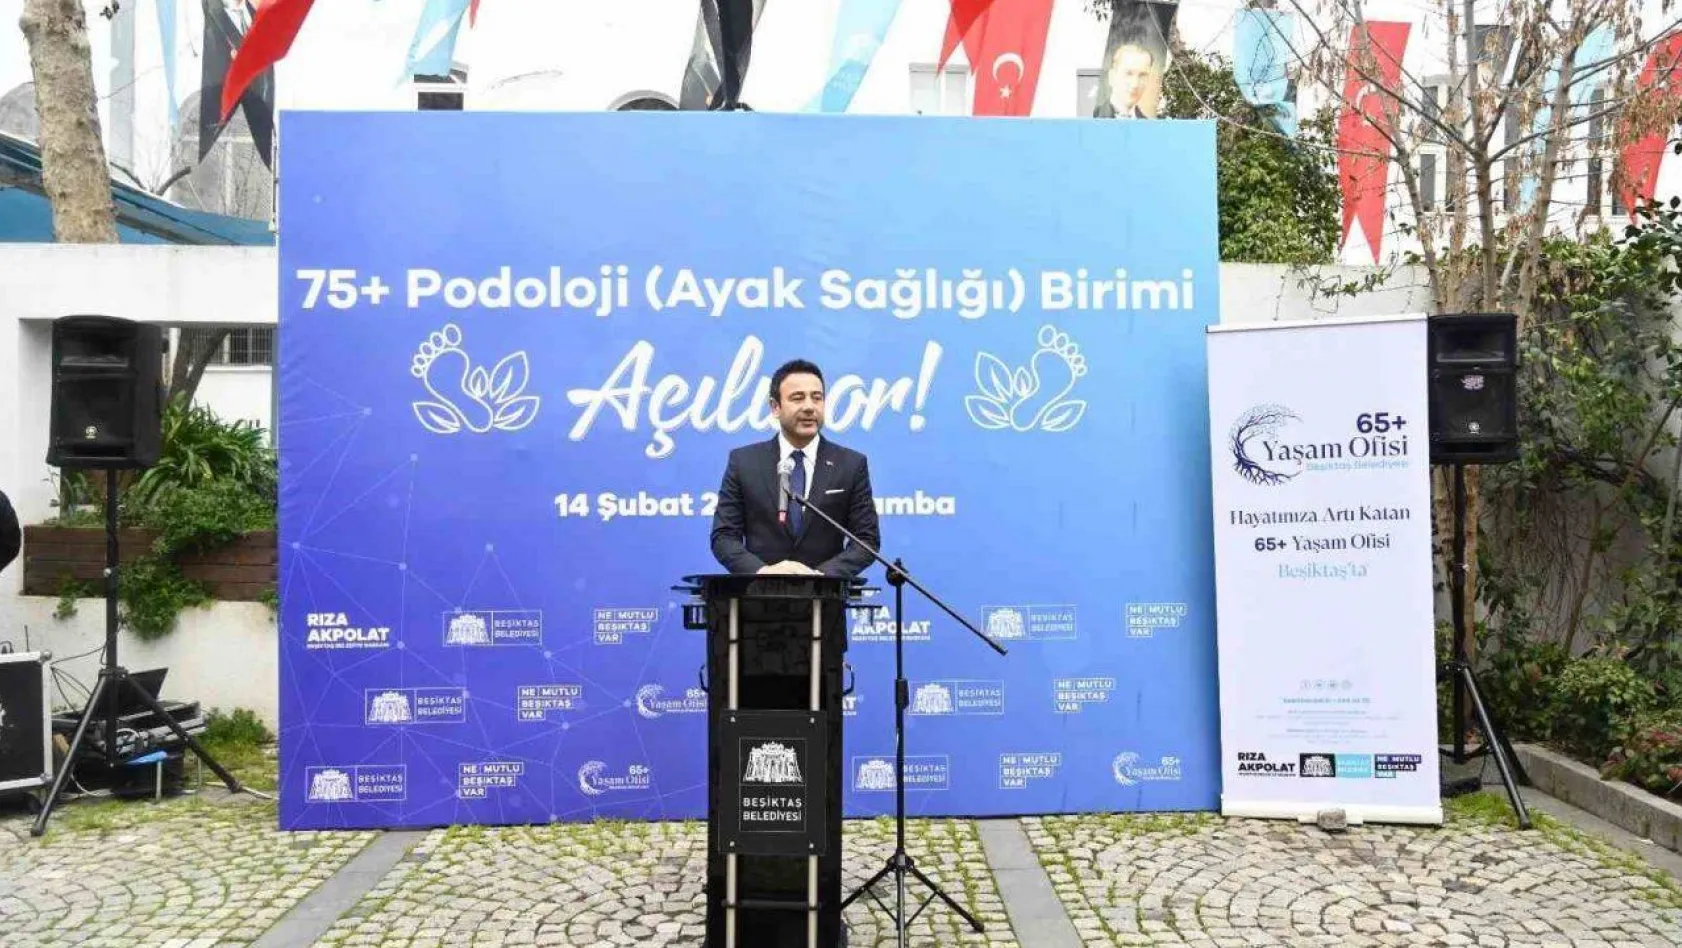 Beşiktaş'ta 75 yaş ve üstü vatandaşlar için podoloji birimi hizmete açıldı